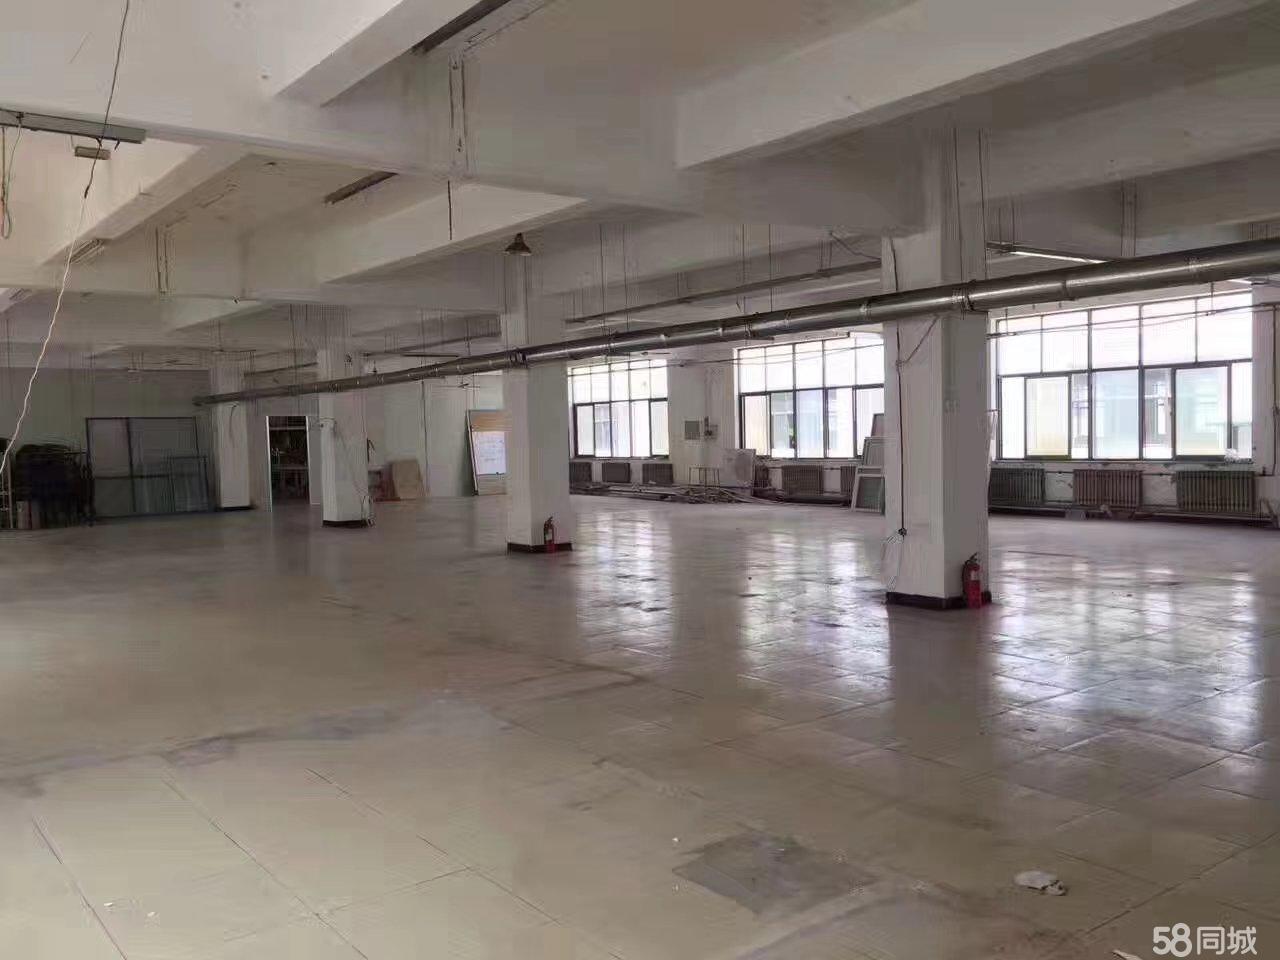 (出租) 后峰西 天津路189-3，2楼 厂房 900平米